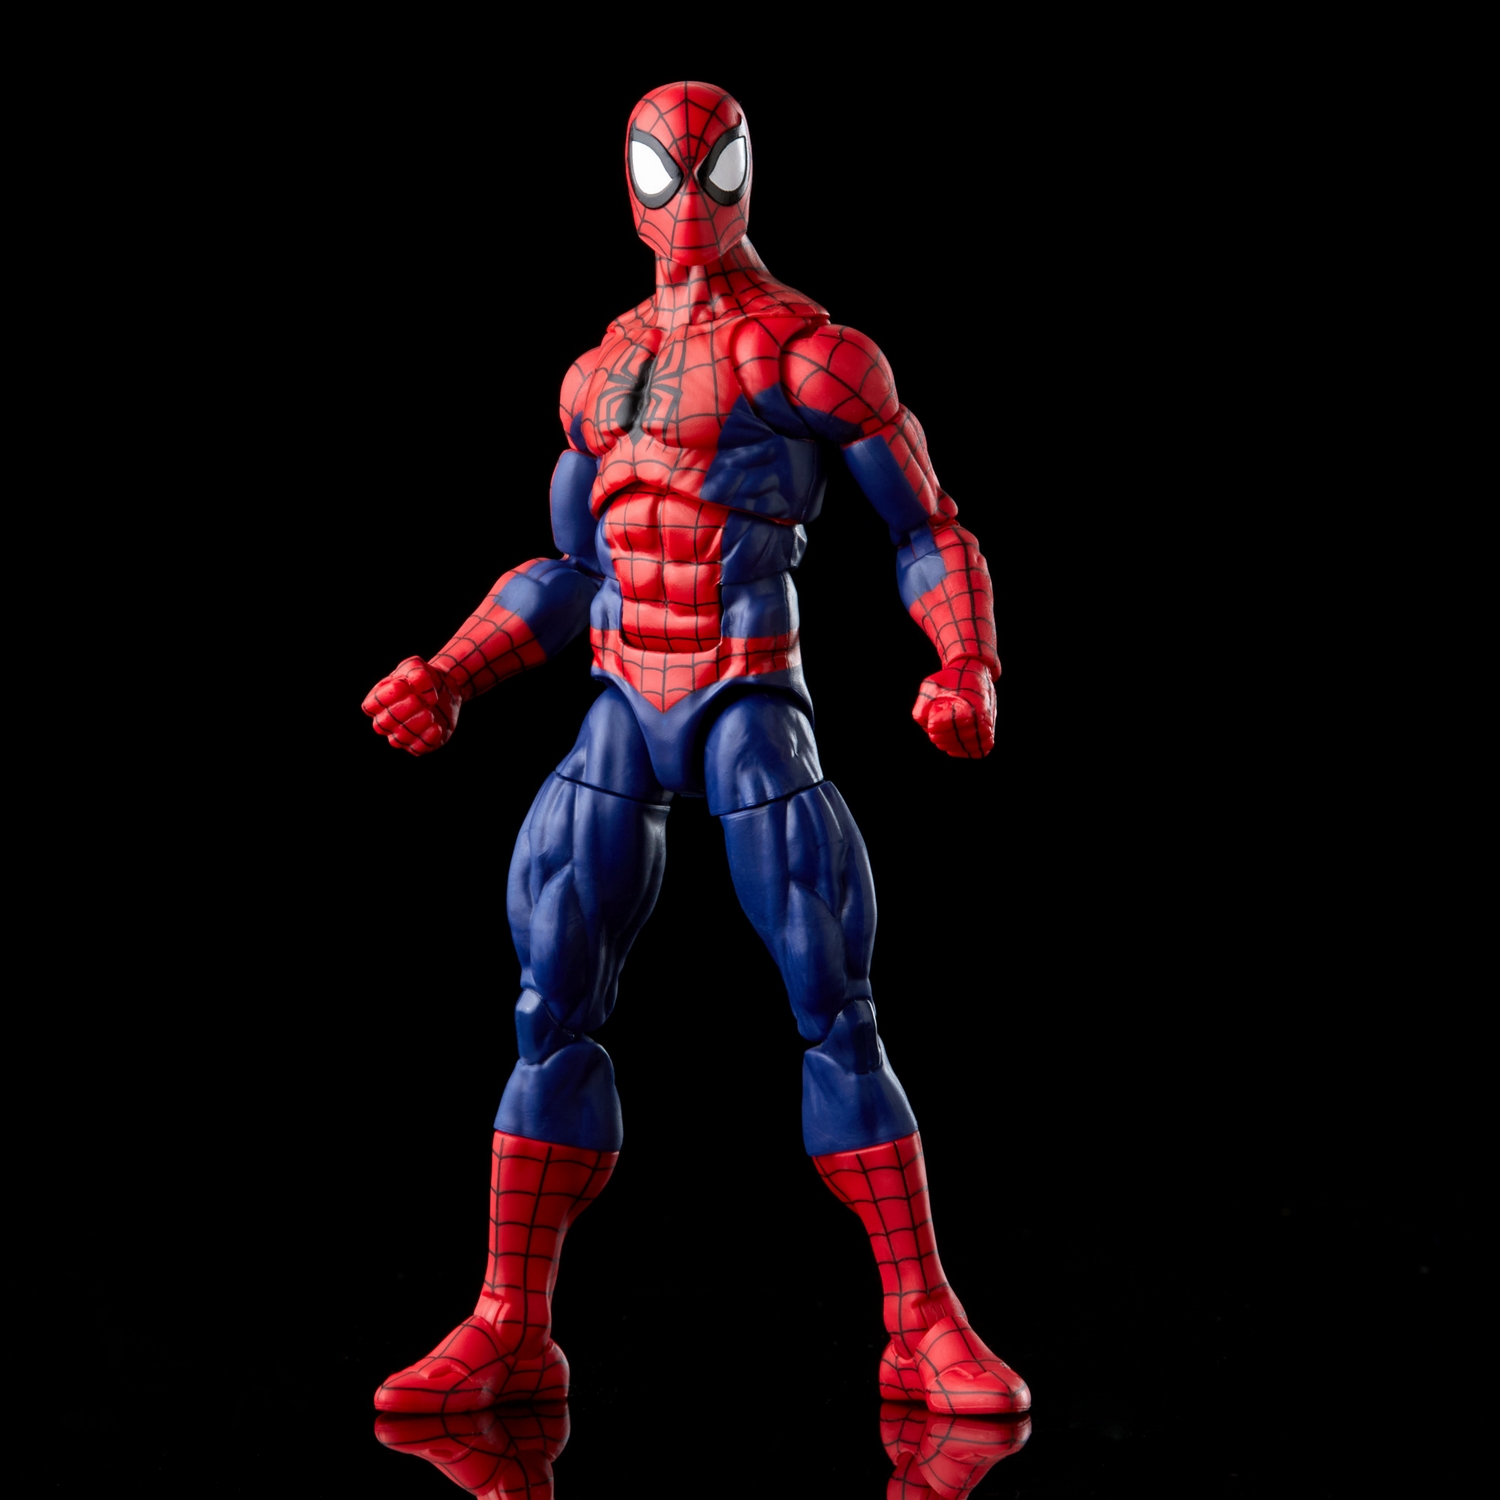 Marvel Legends Series Spider-Man and Marvel’s Spinneret - Image 2.jpg